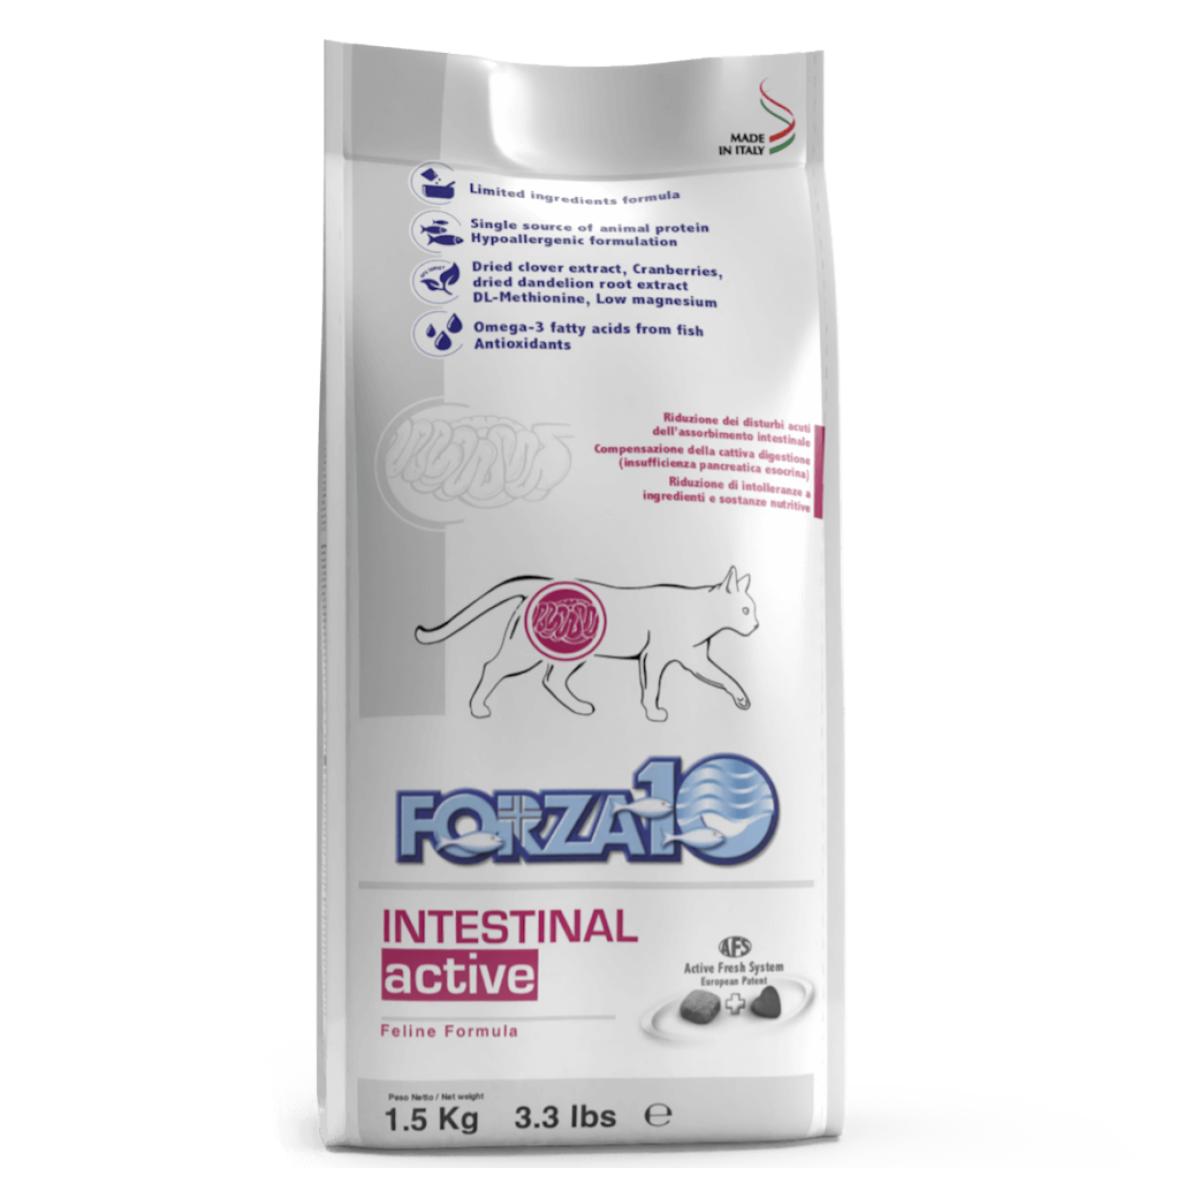 FORZA10 Intestinal Active ir pilnvērtīga, sabalansēta diētiska barība pieaugušiem kaķiem ar kuņģa zarnu trakta traucējumiem.